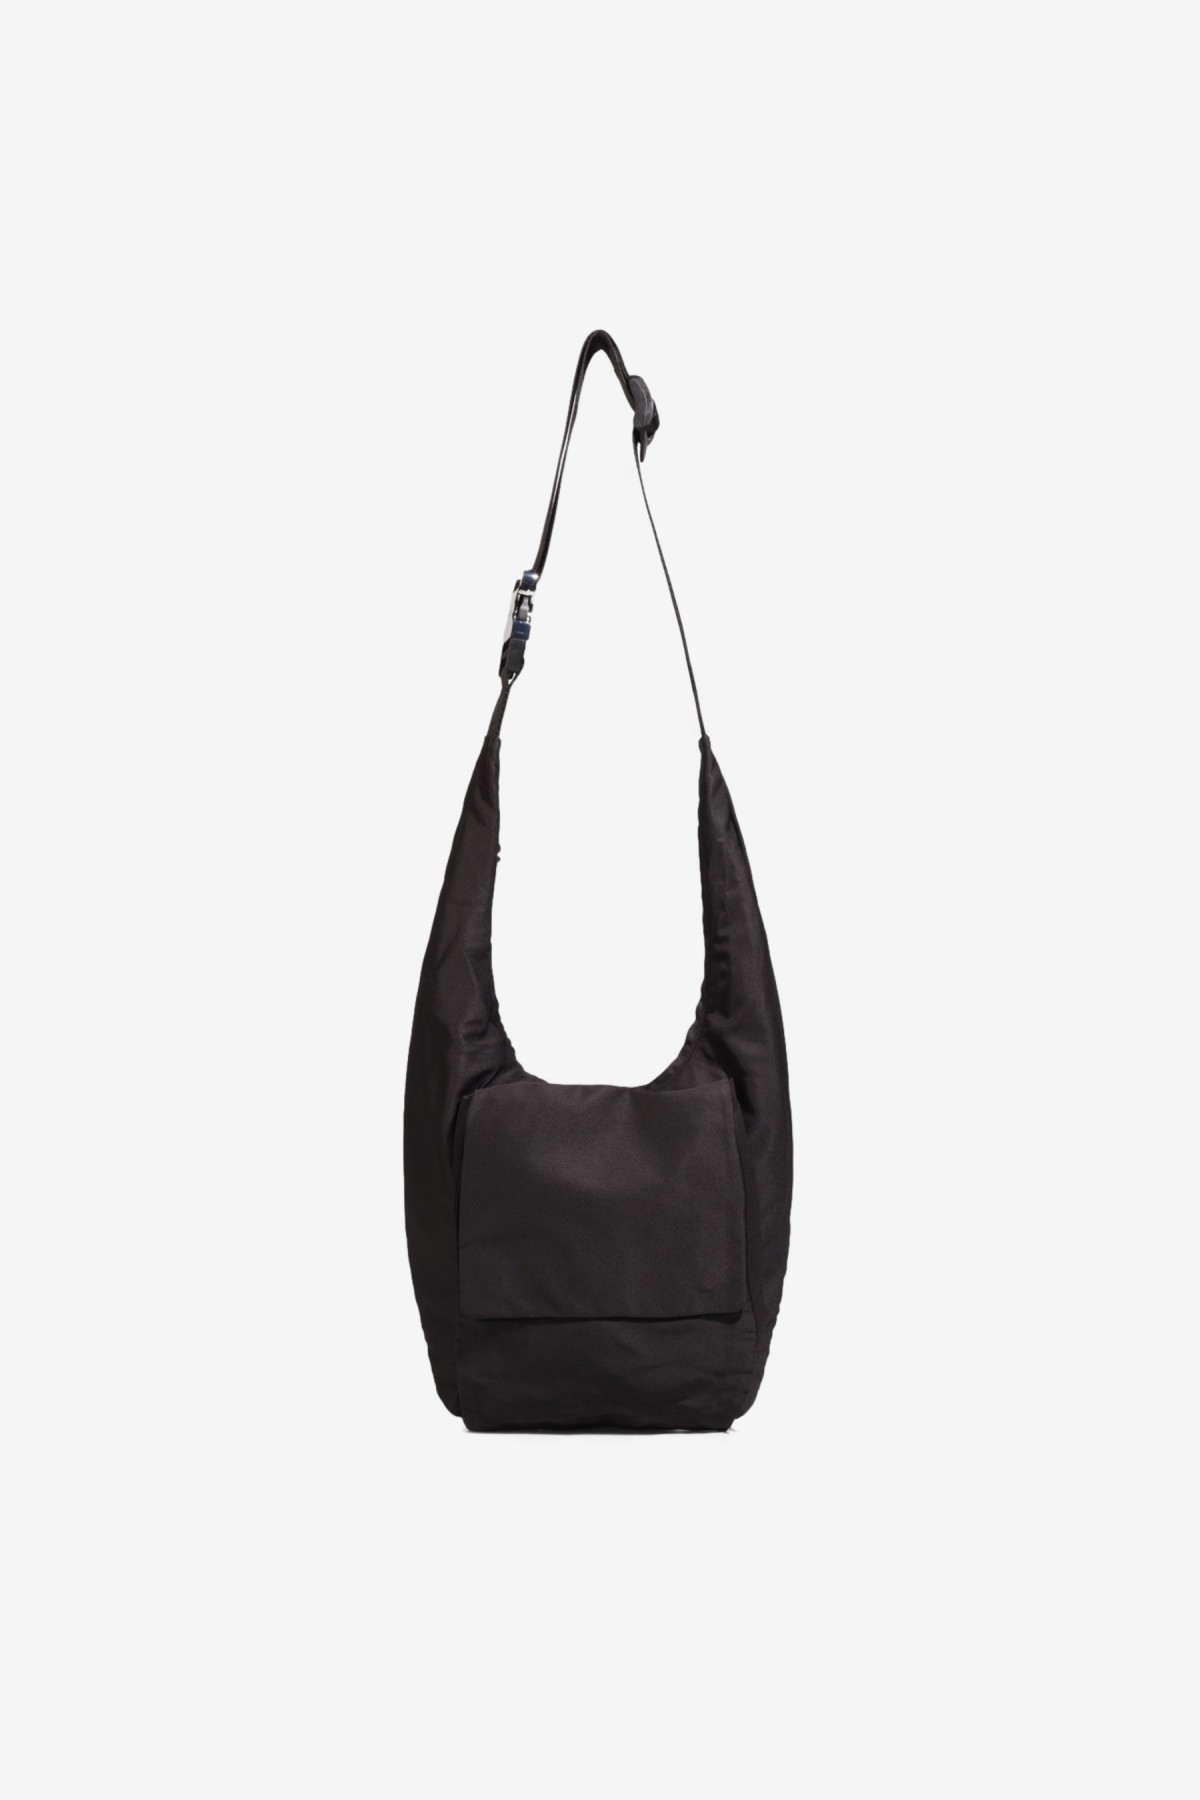 Arcs SAMPLE Wrap Bag in Black